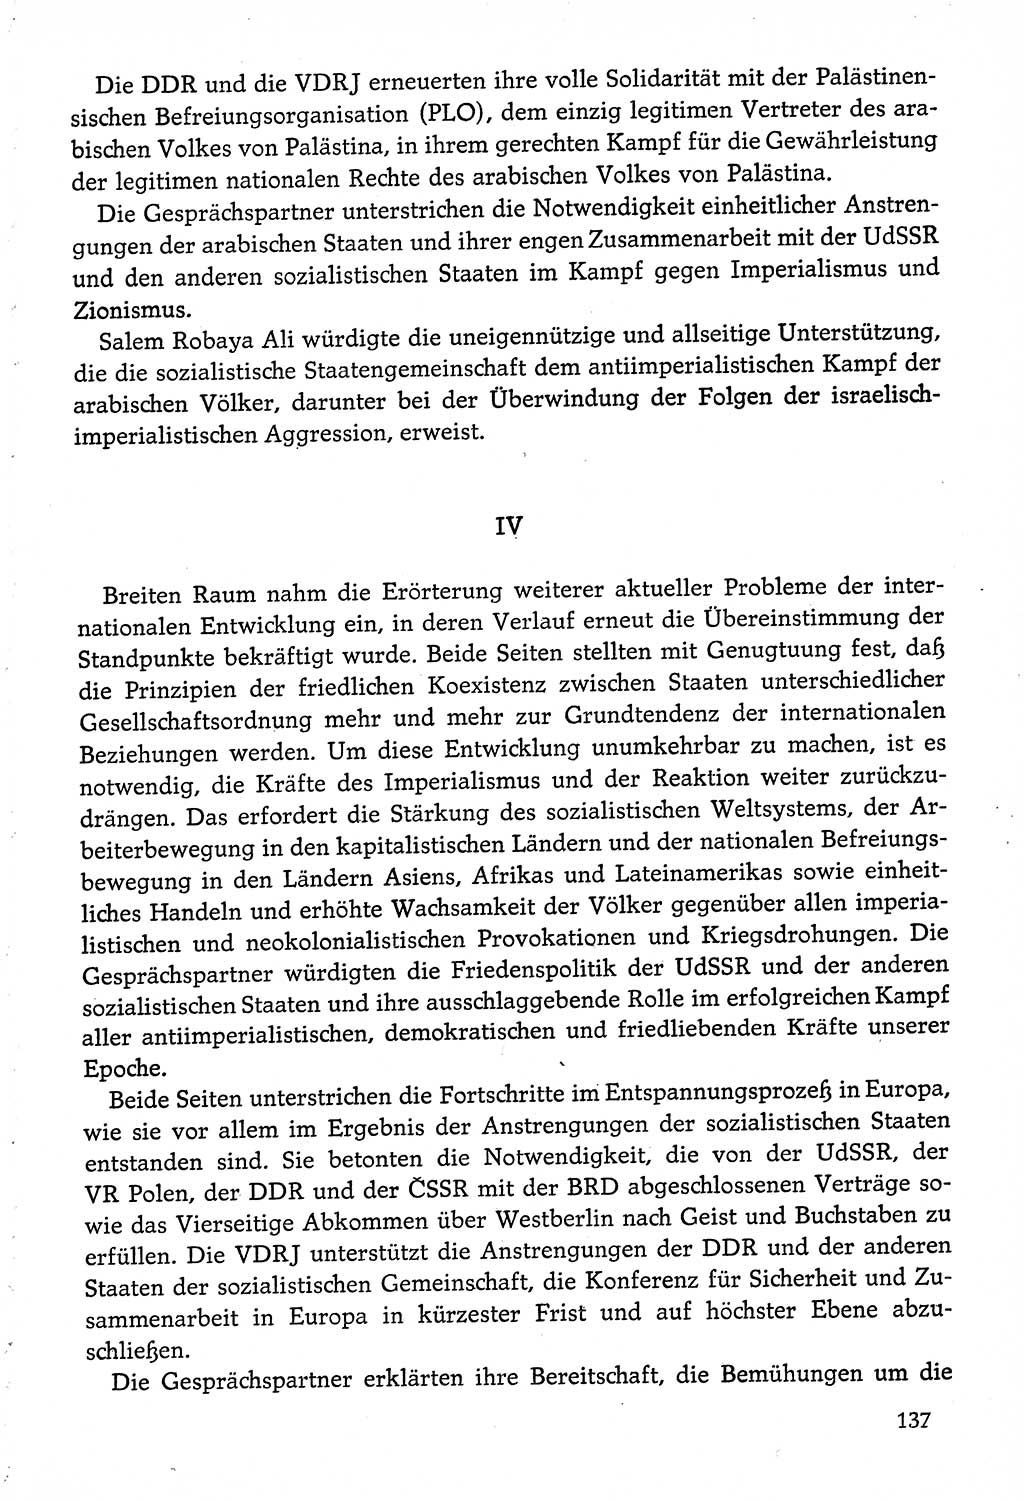 Dokumente der Sozialistischen Einheitspartei Deutschlands (SED) [Deutsche Demokratische Republik (DDR)] 1974-1975, Seite 137 (Dok. SED DDR 1978, Bd. ⅩⅤ, S. 137)